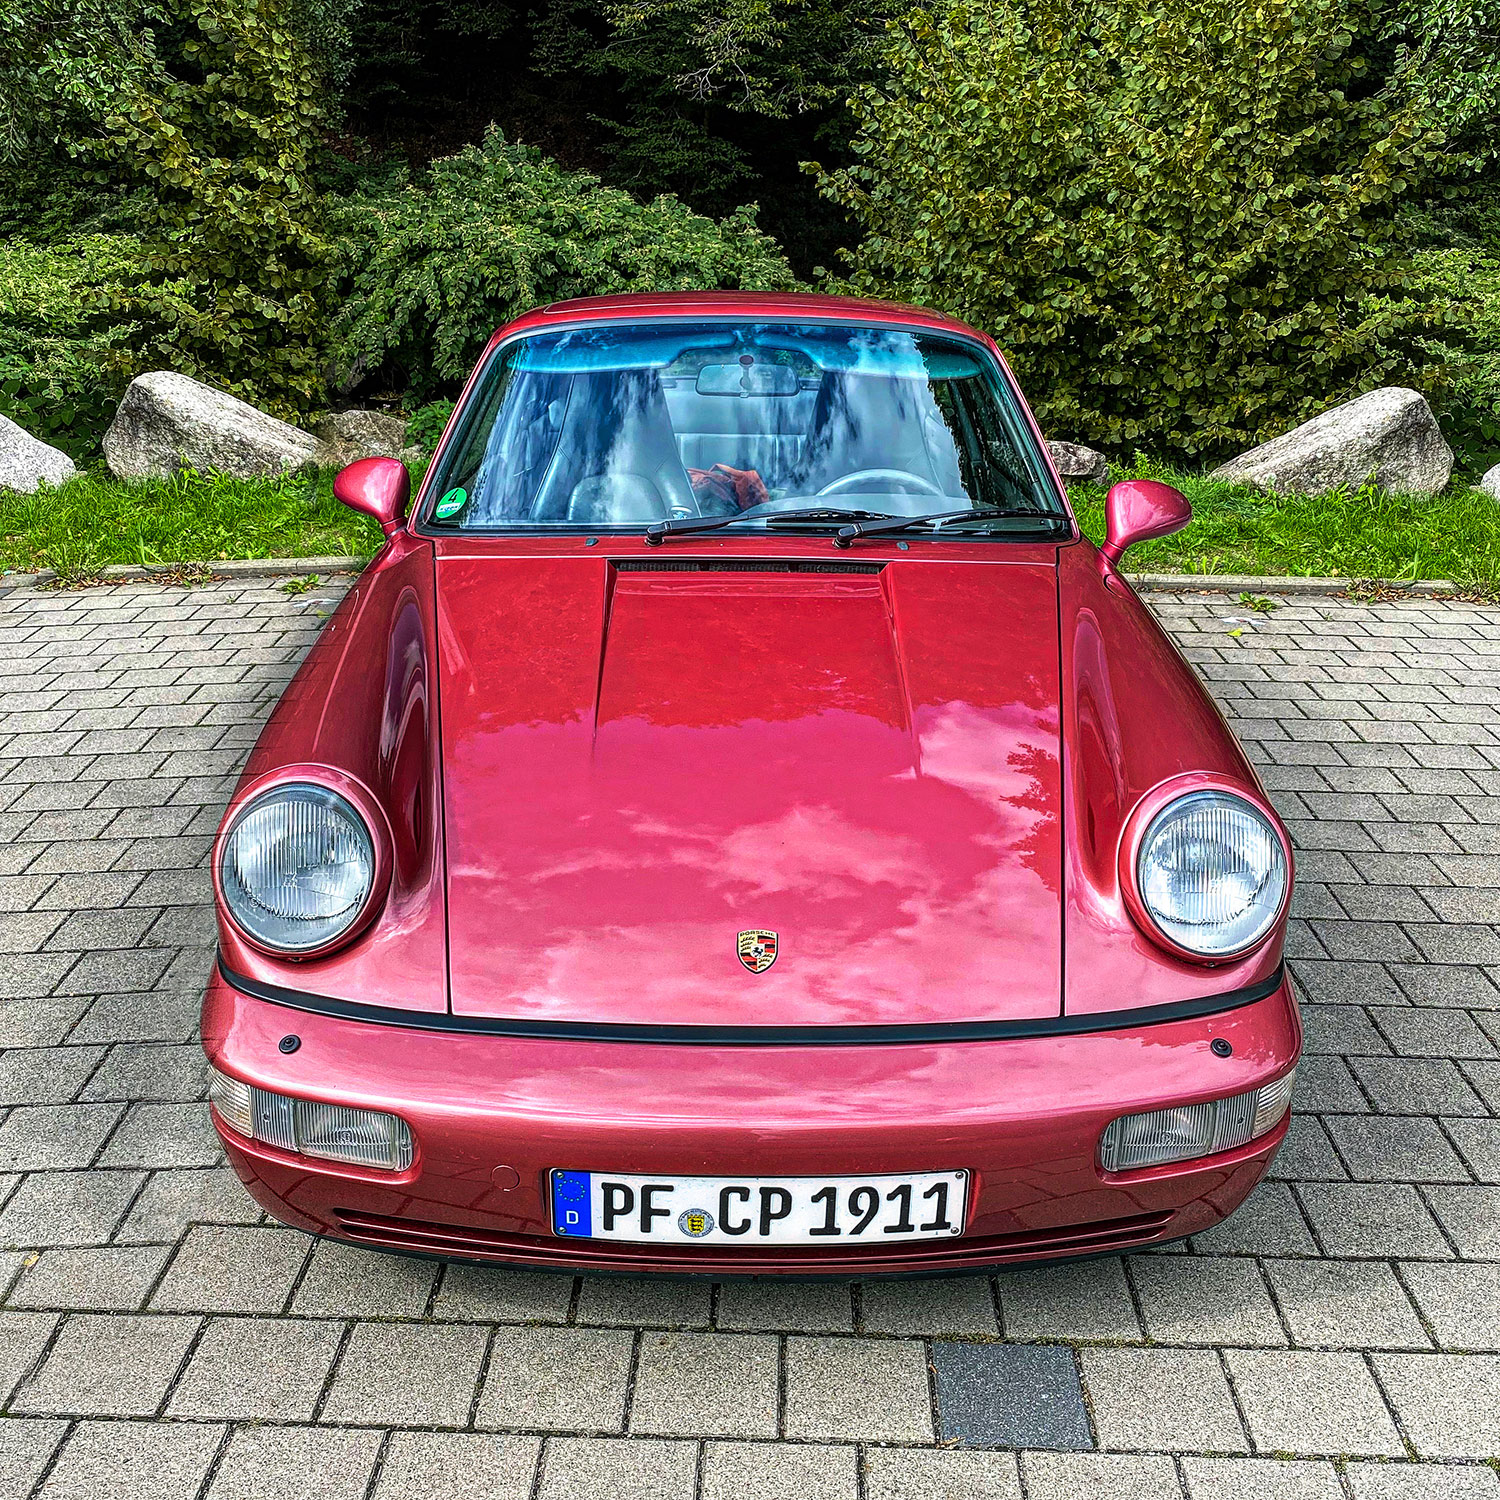 Porsche 911 in Baden Baden Germany